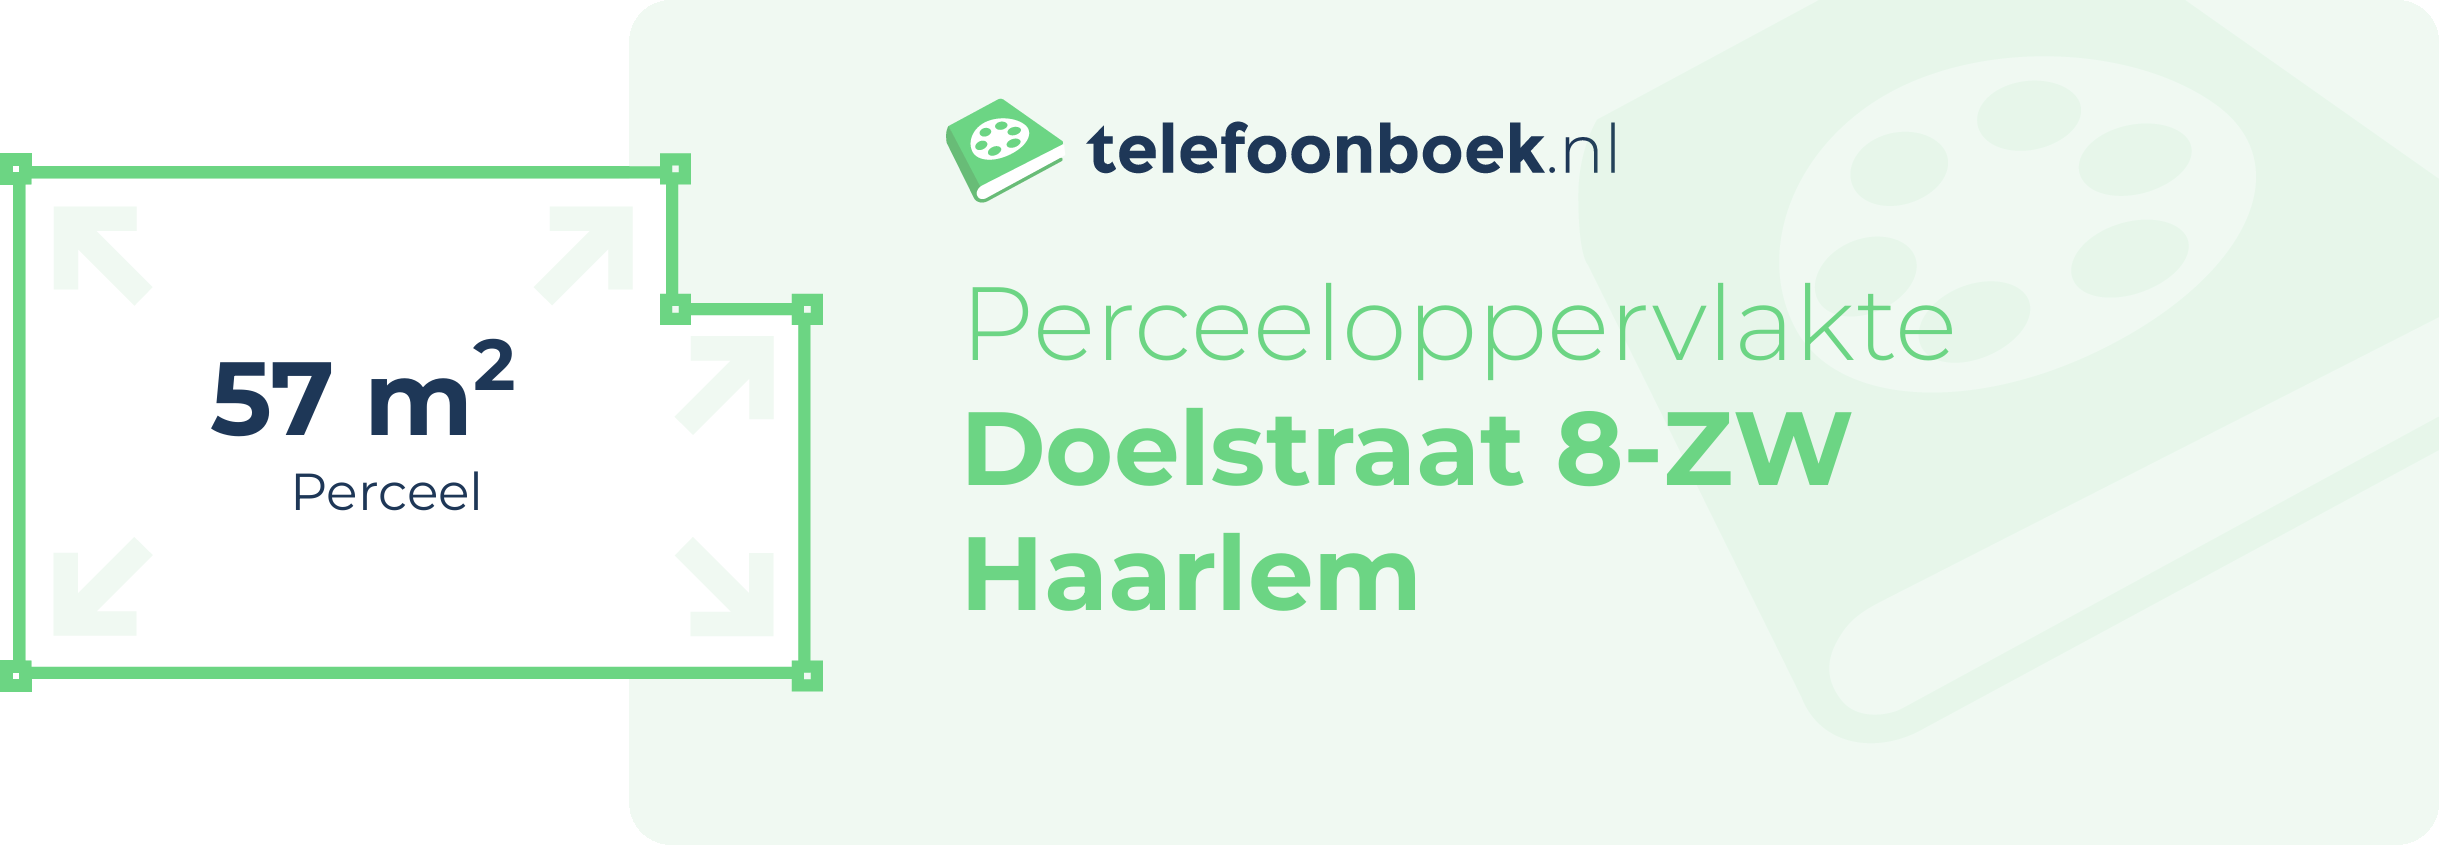 Perceeloppervlakte Doelstraat 8-ZW Haarlem